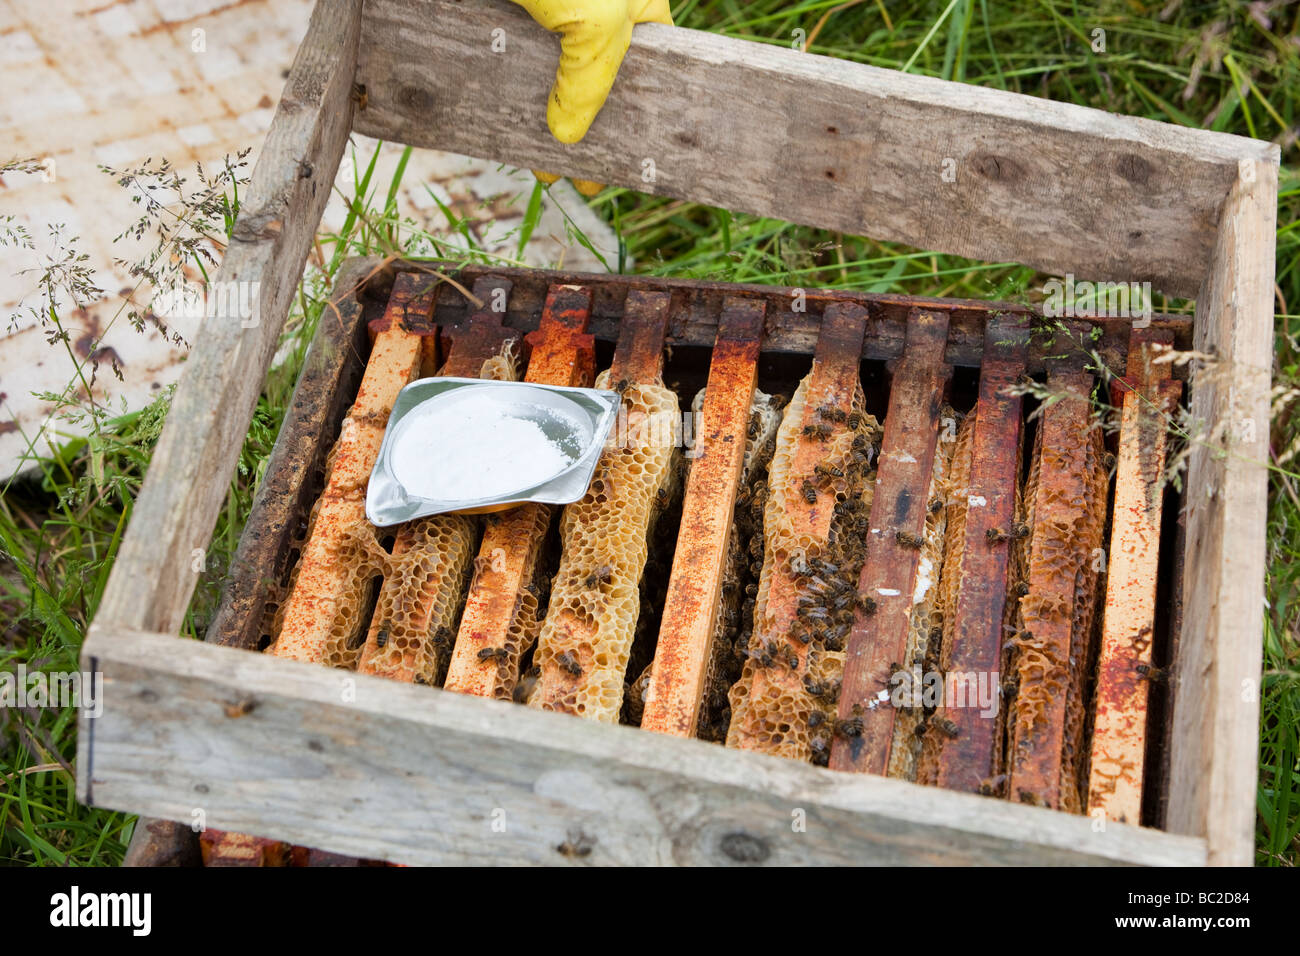 Bill Mackereth ein Imker aus Cockermouth Cumbria UK prüft seine Bienenstöcke auf Anzeichen von Varoa-Milbe Schaden Stockfoto